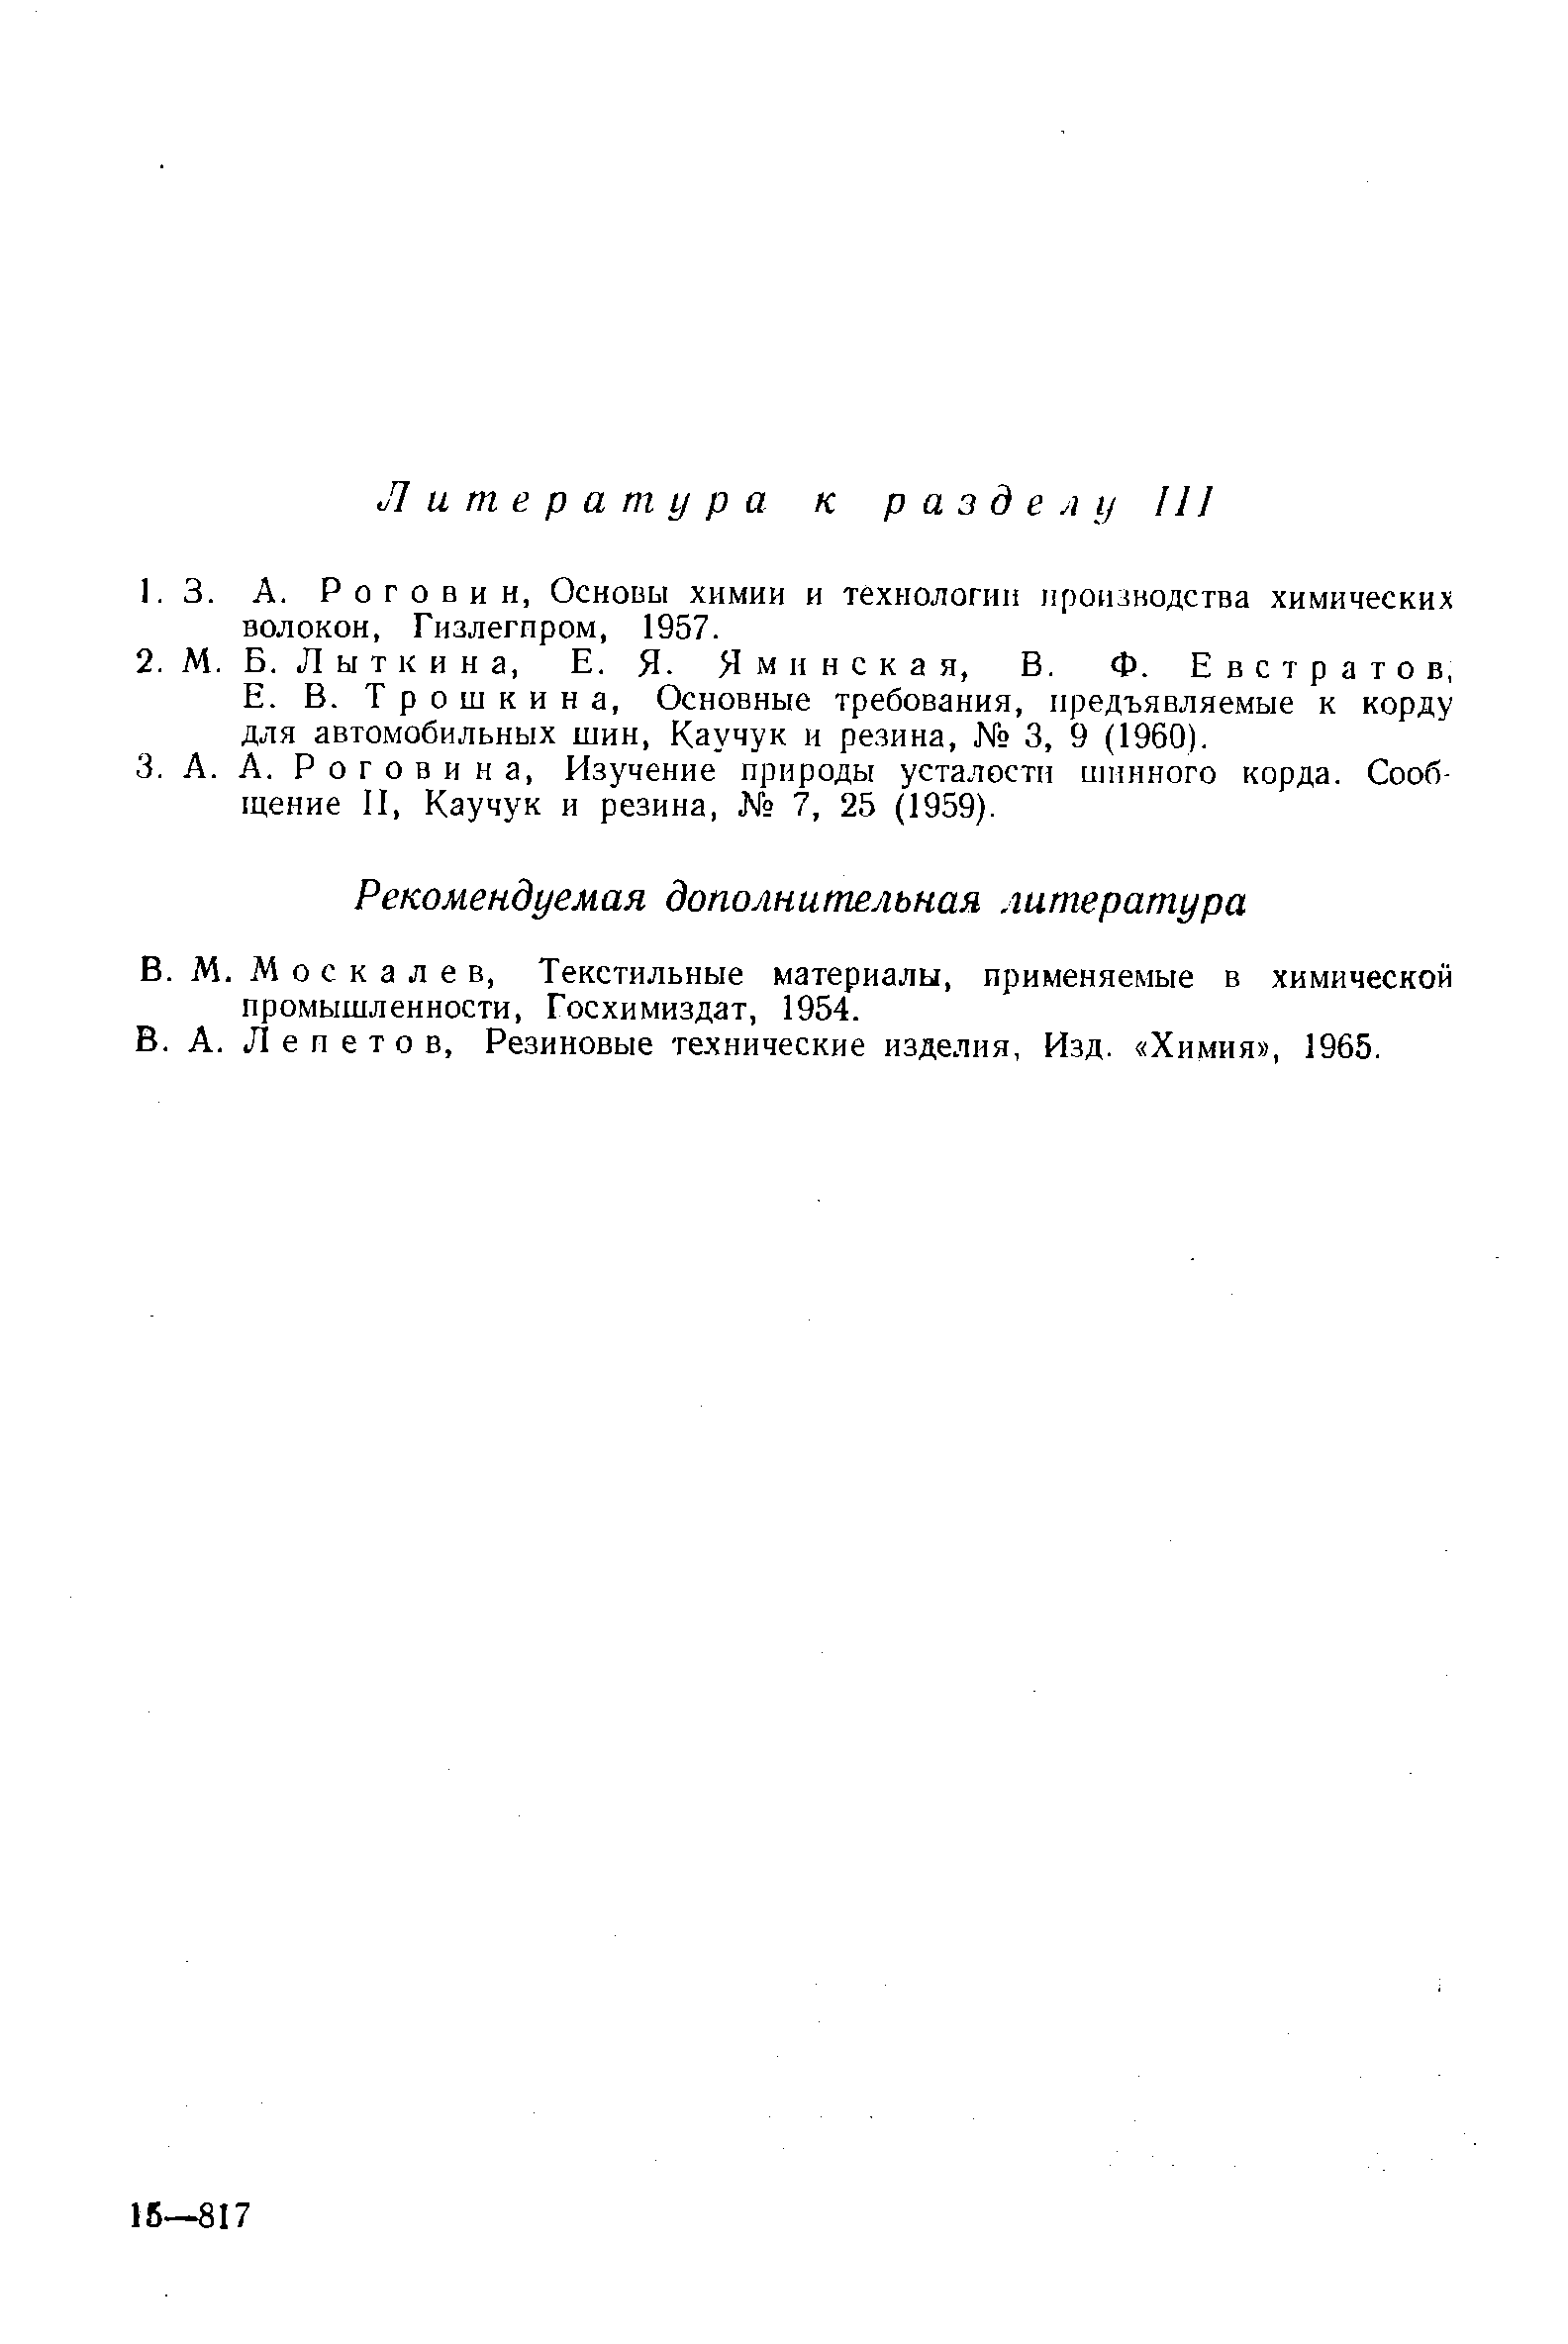 Трошкина, Основные требования, предъявляемые к корду для автомобильных шин. Каучук и резина, 3, 9 (1960).